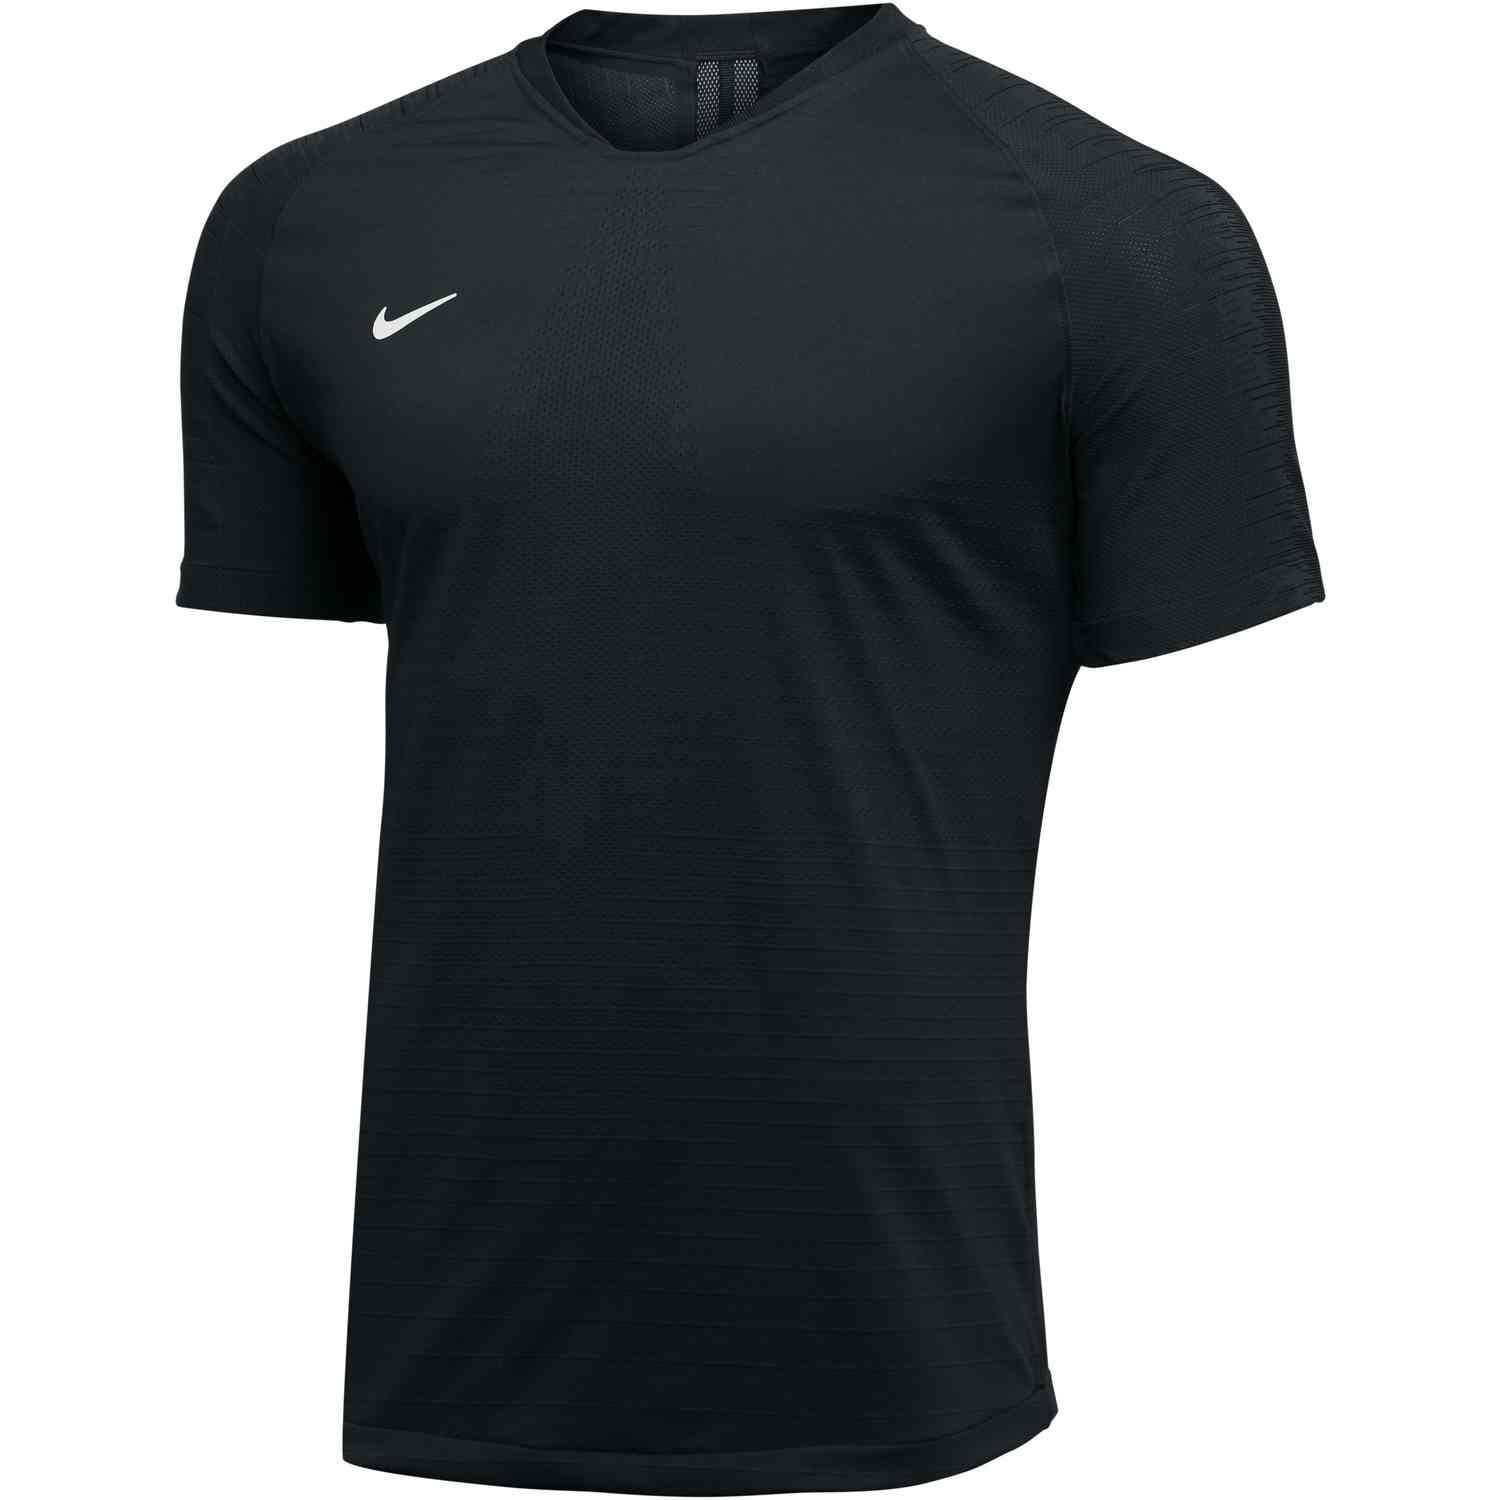 Nike Vaporknit II Jersey - Black - SoccerPro